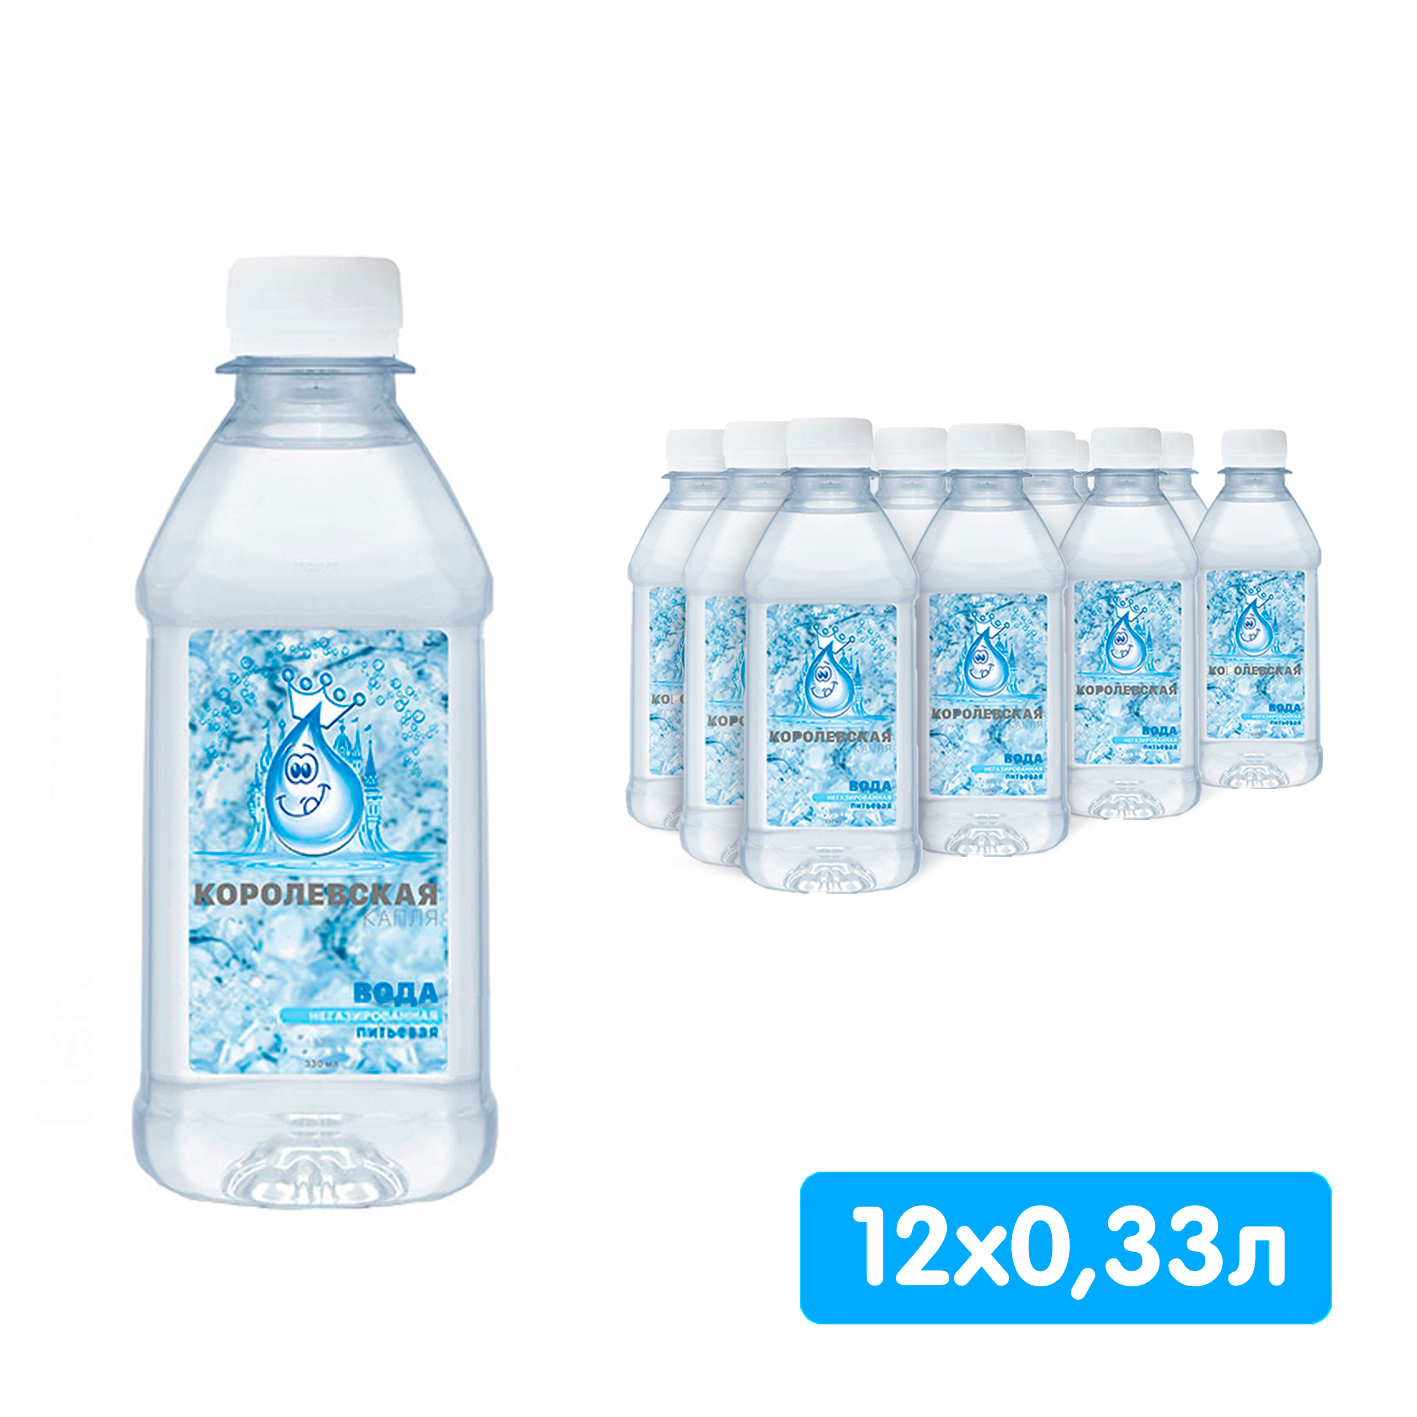 Королевская вода (Мия) 0.33 литра, без газа, пэт, 12 шт. в уп Королевская вода (Мия) 0.33 литра, без газа, пэт, 12 шт. в уп. - фото 1